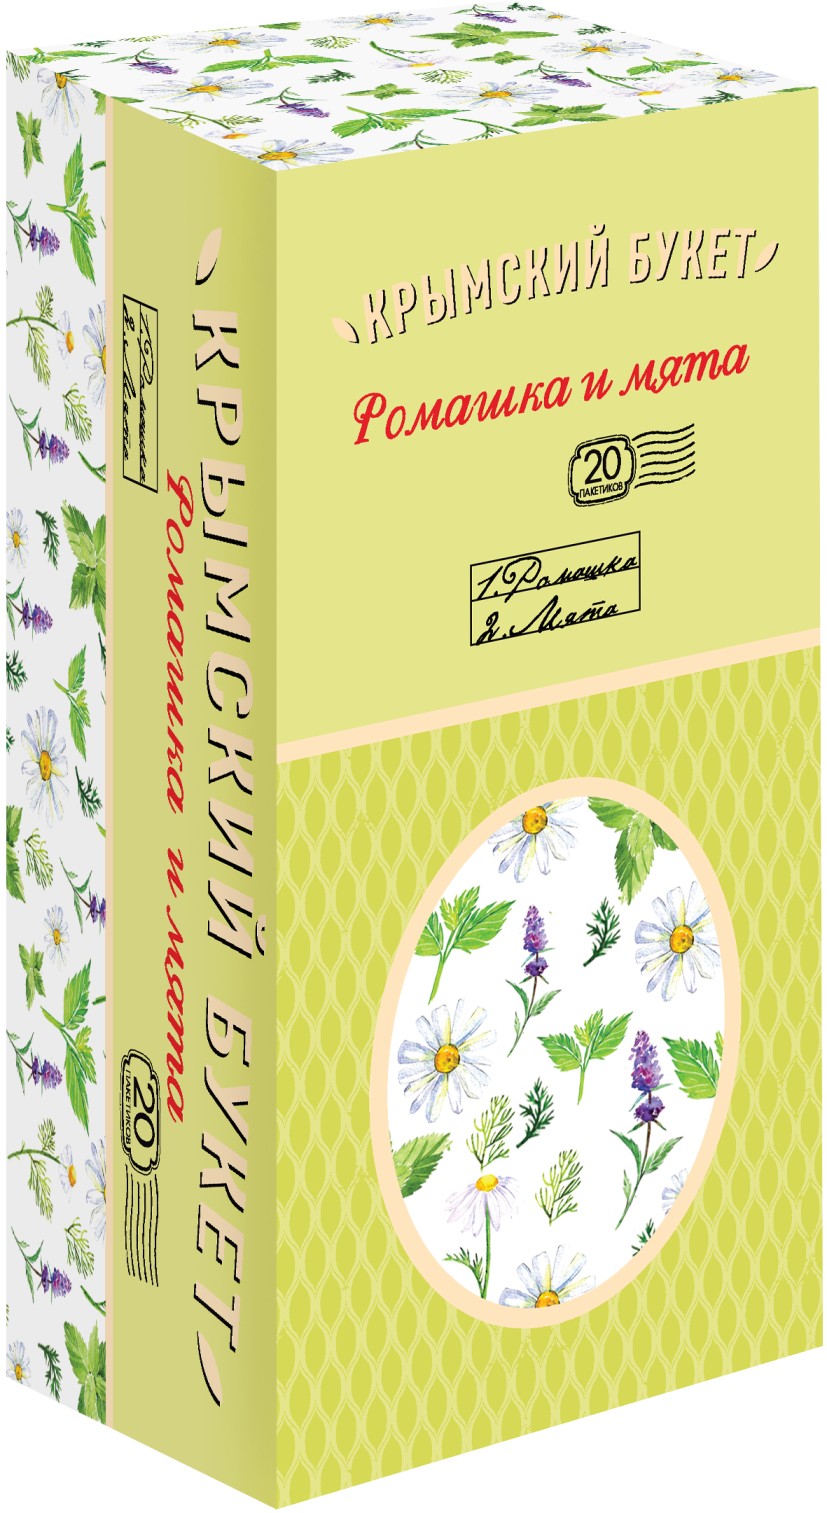 Чайный напиток "Крымский букет" Ромашка и мята, 20 пакетиков, 30 гр.